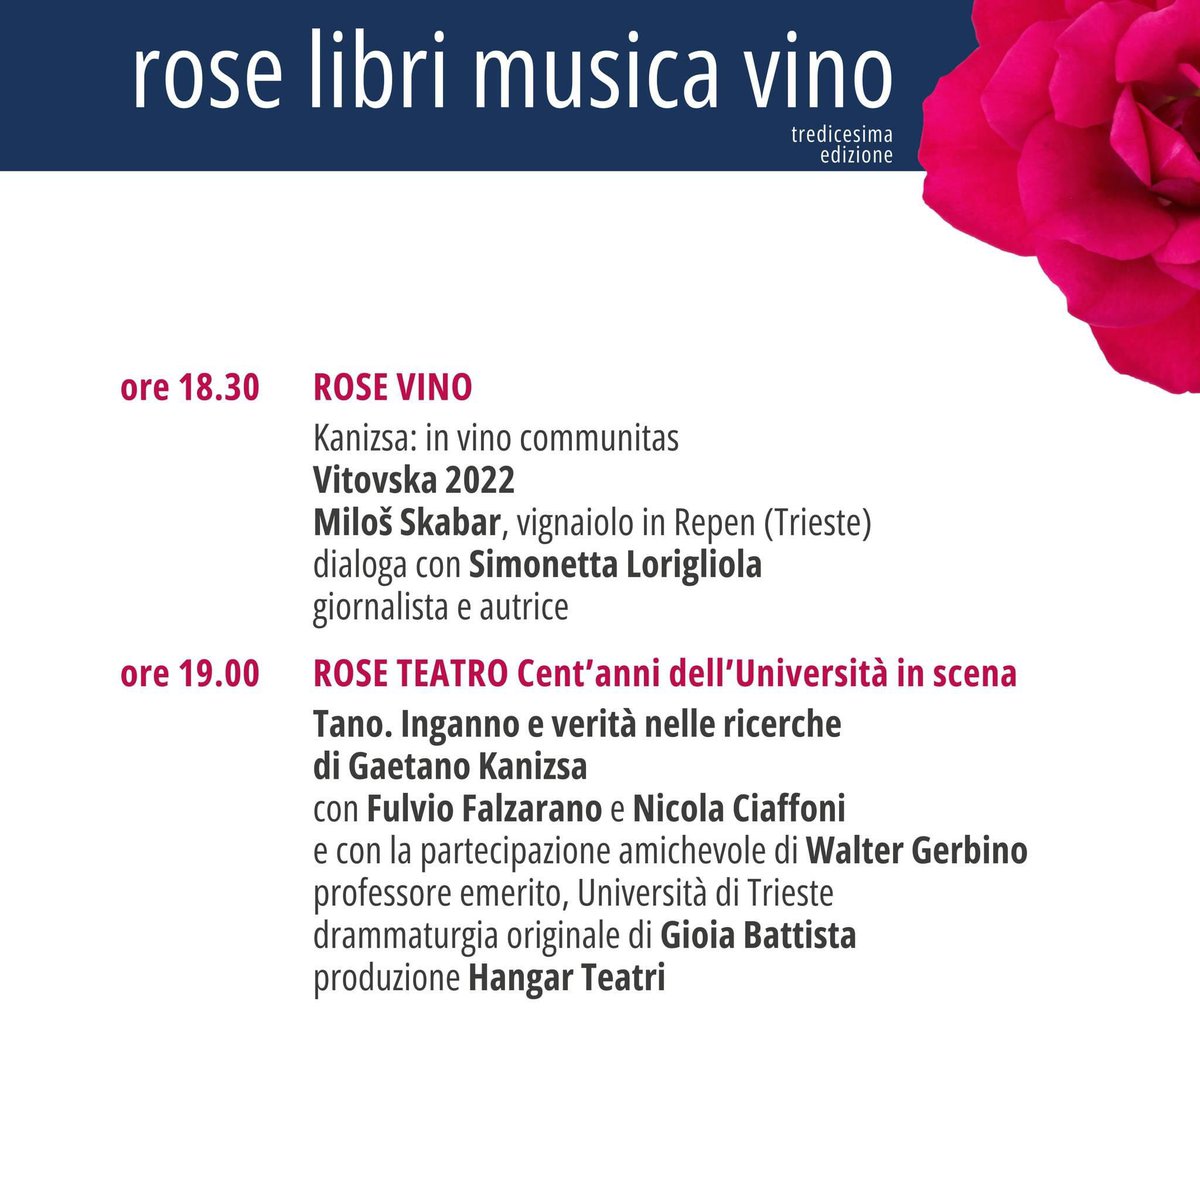 Buongiorno con il sole ☀️ 
Vi aspettiamo da questo pomeriggio al @ParcoSGiovanni dove nello splendido roseto 🌹 si svolgerà la seconda giornata di #RoseLibriMusicaVino